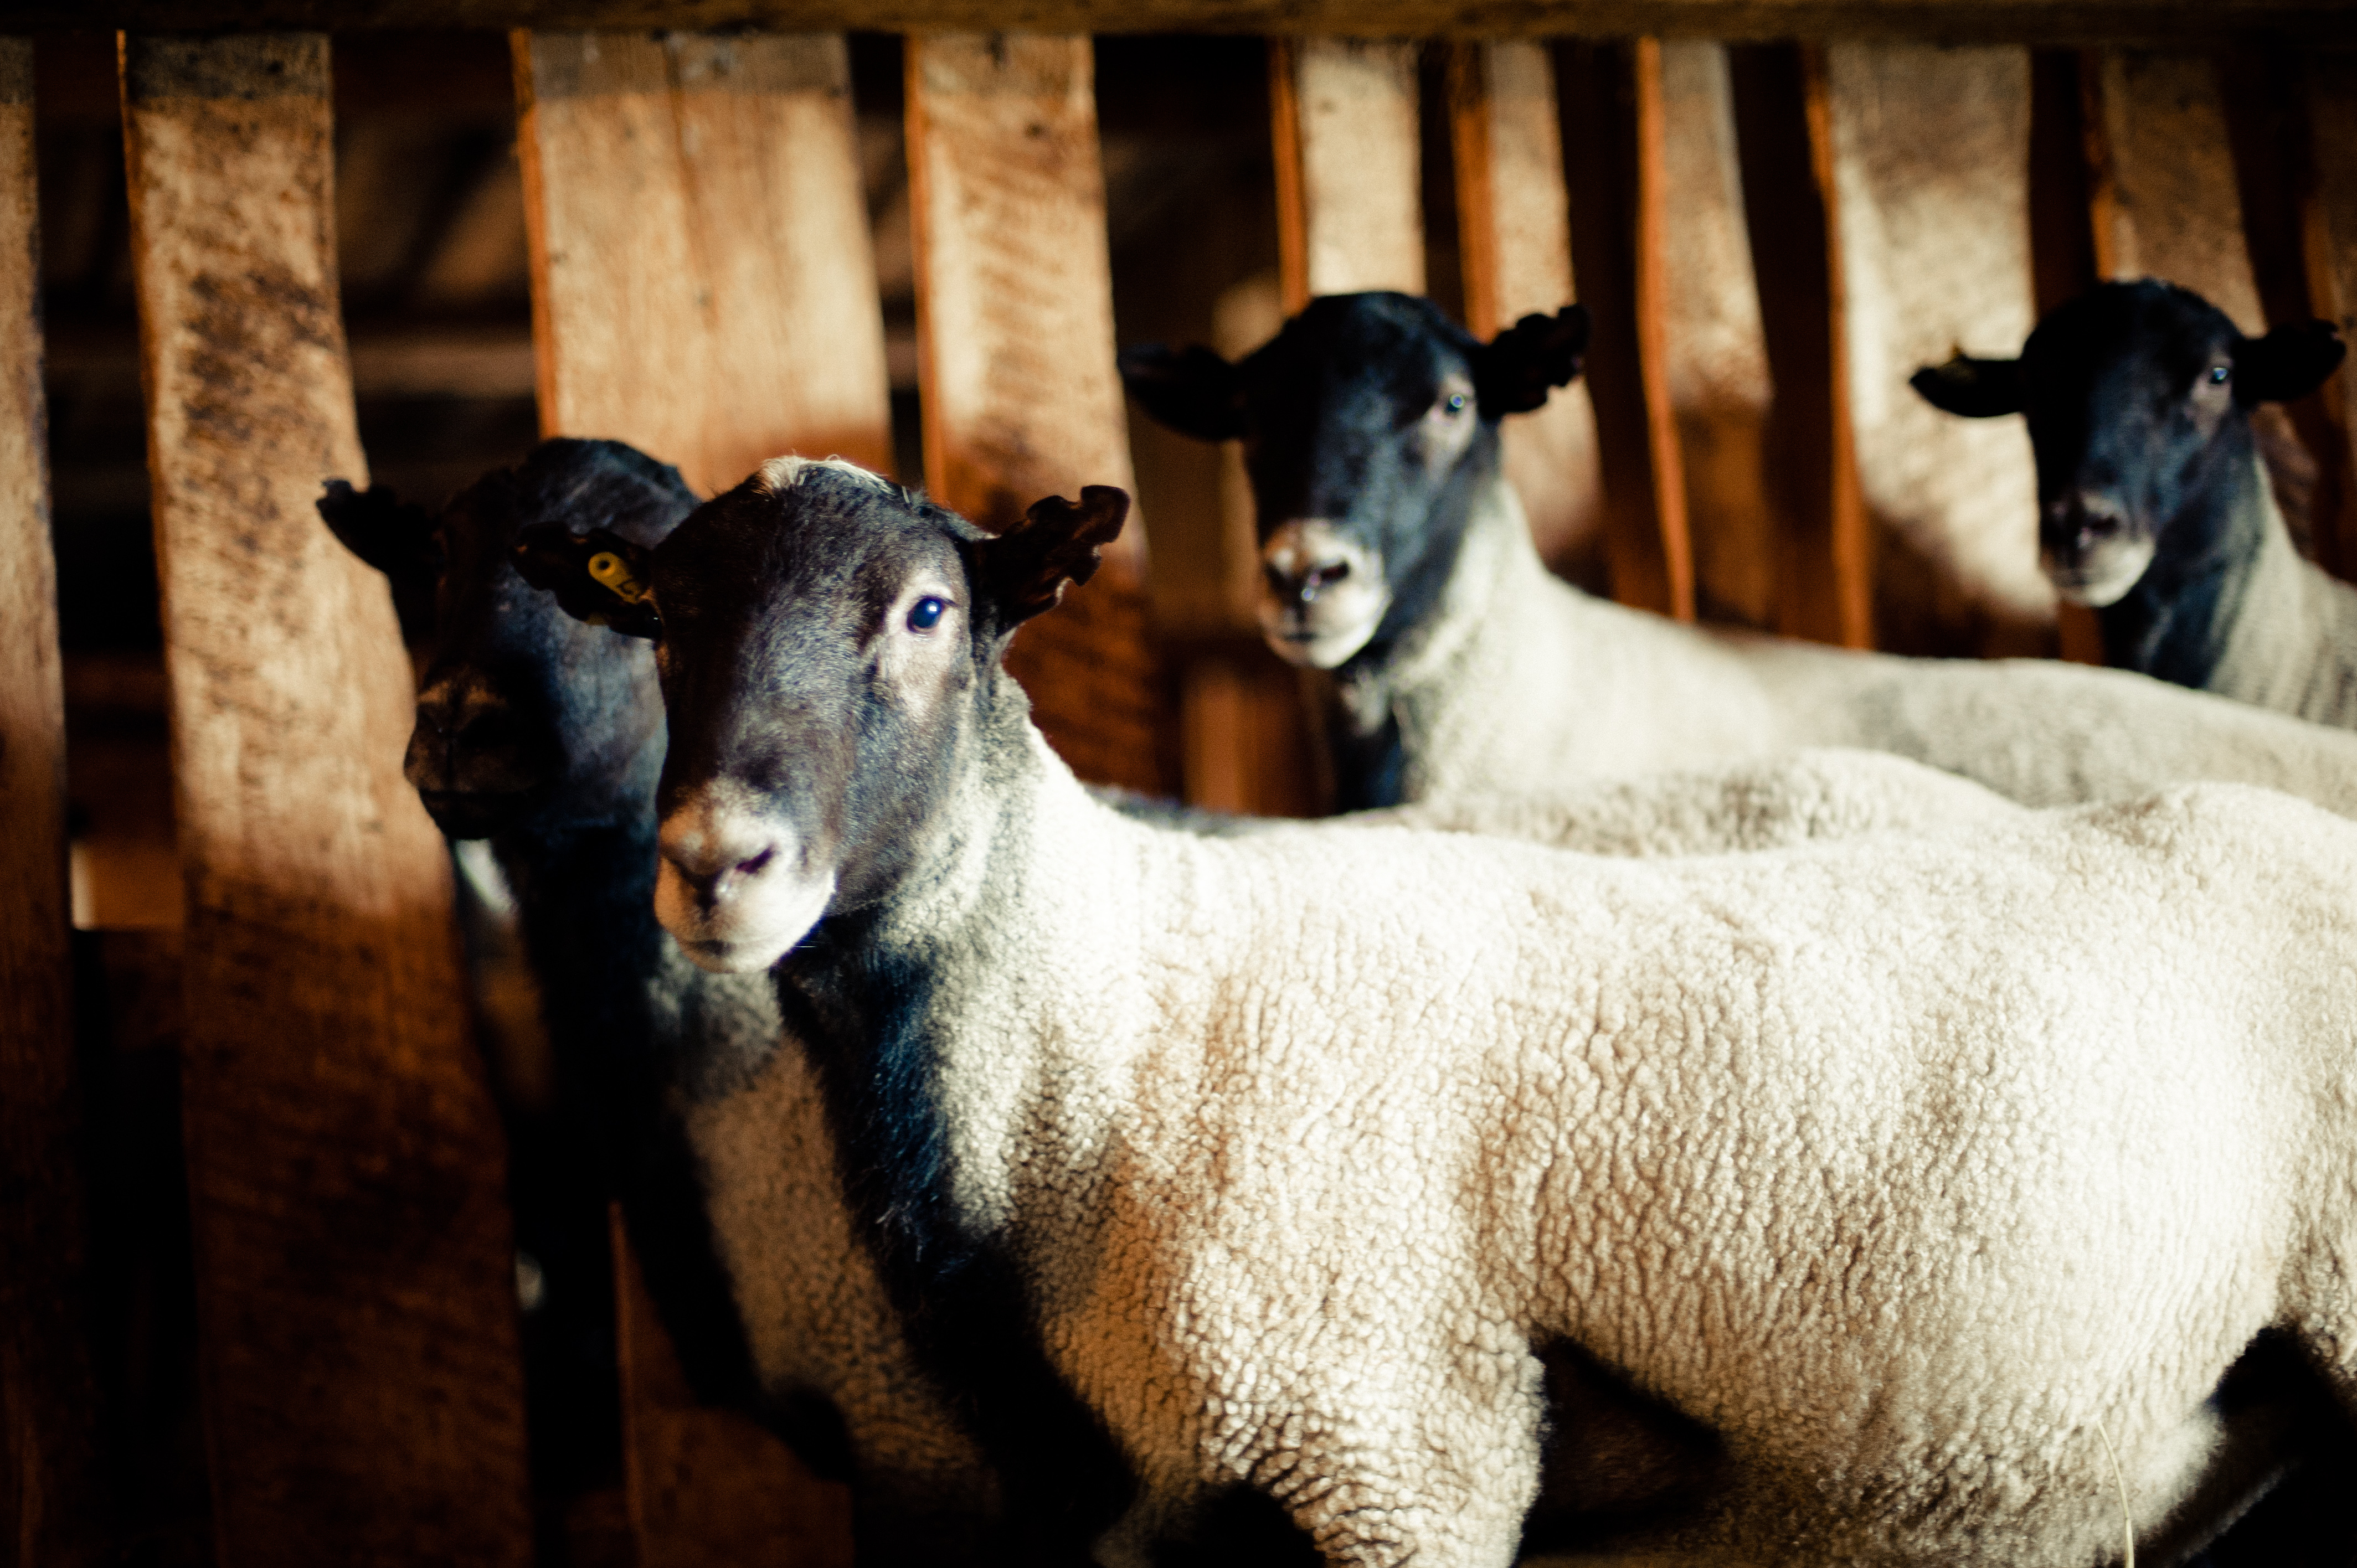 Всё о романовской породе овец. характеристики, отзывы, фото и видео